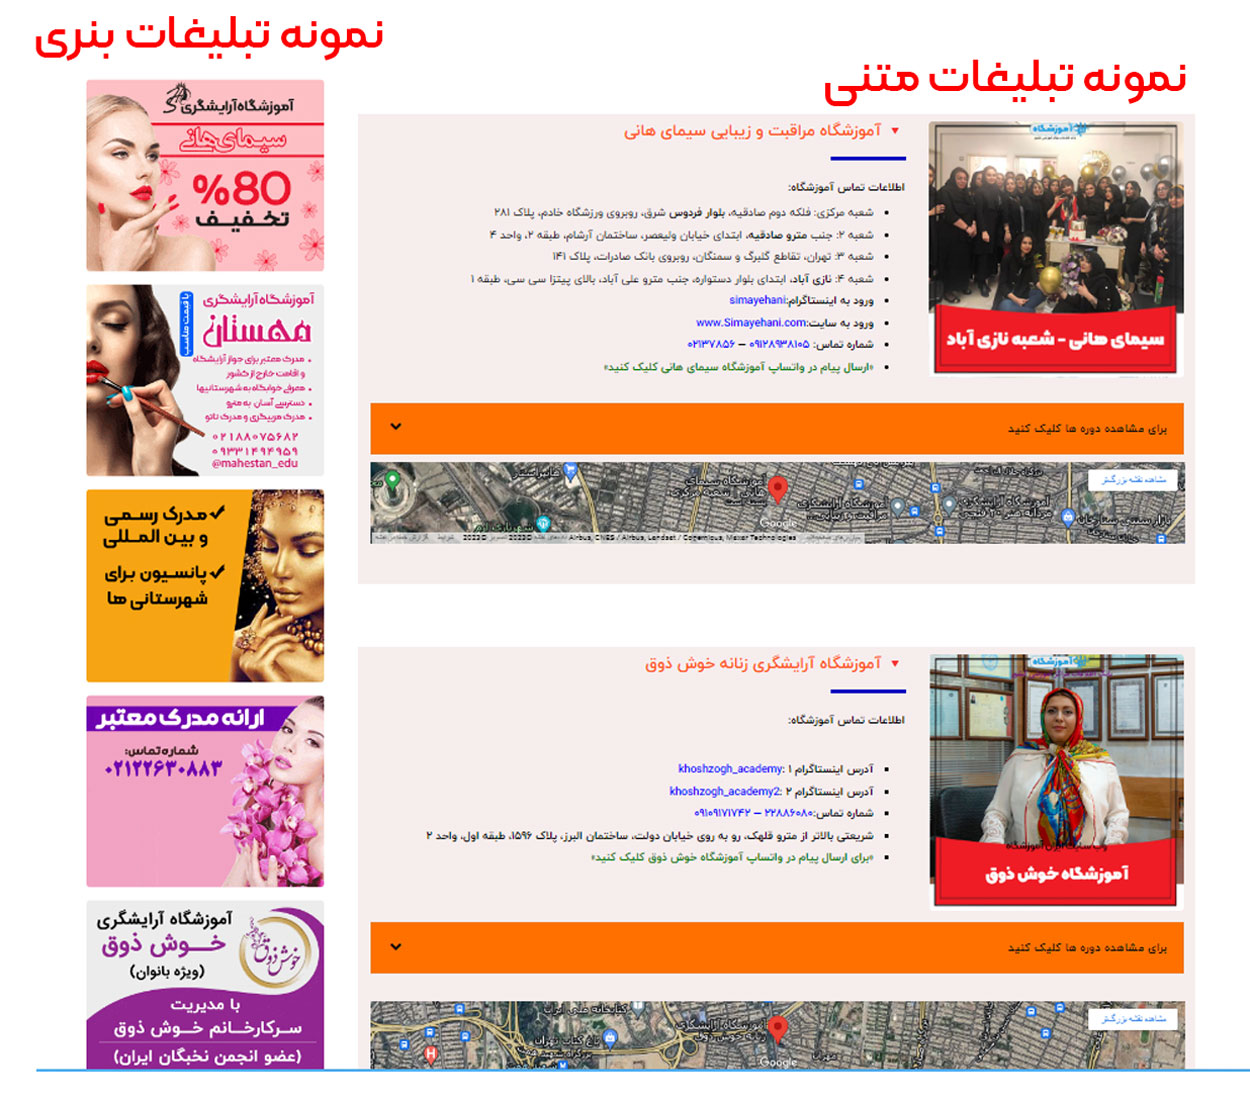 تبلیغات ایران آموزشگاه 